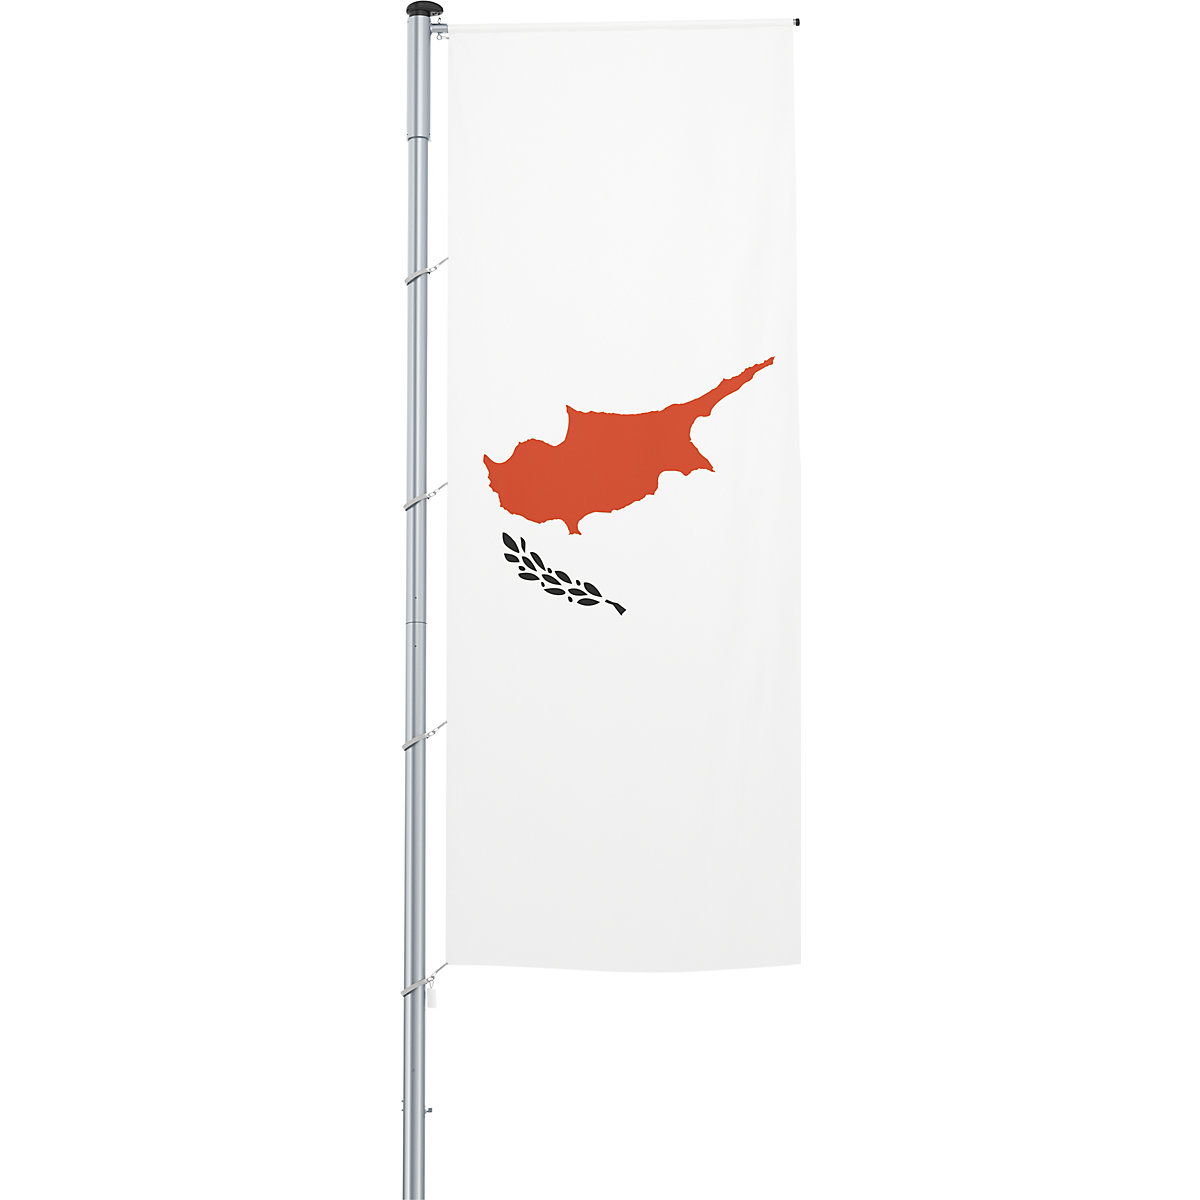 Mannus – Bandera con pluma/bandera del país, formato 1,2 x 3 m, Chipre